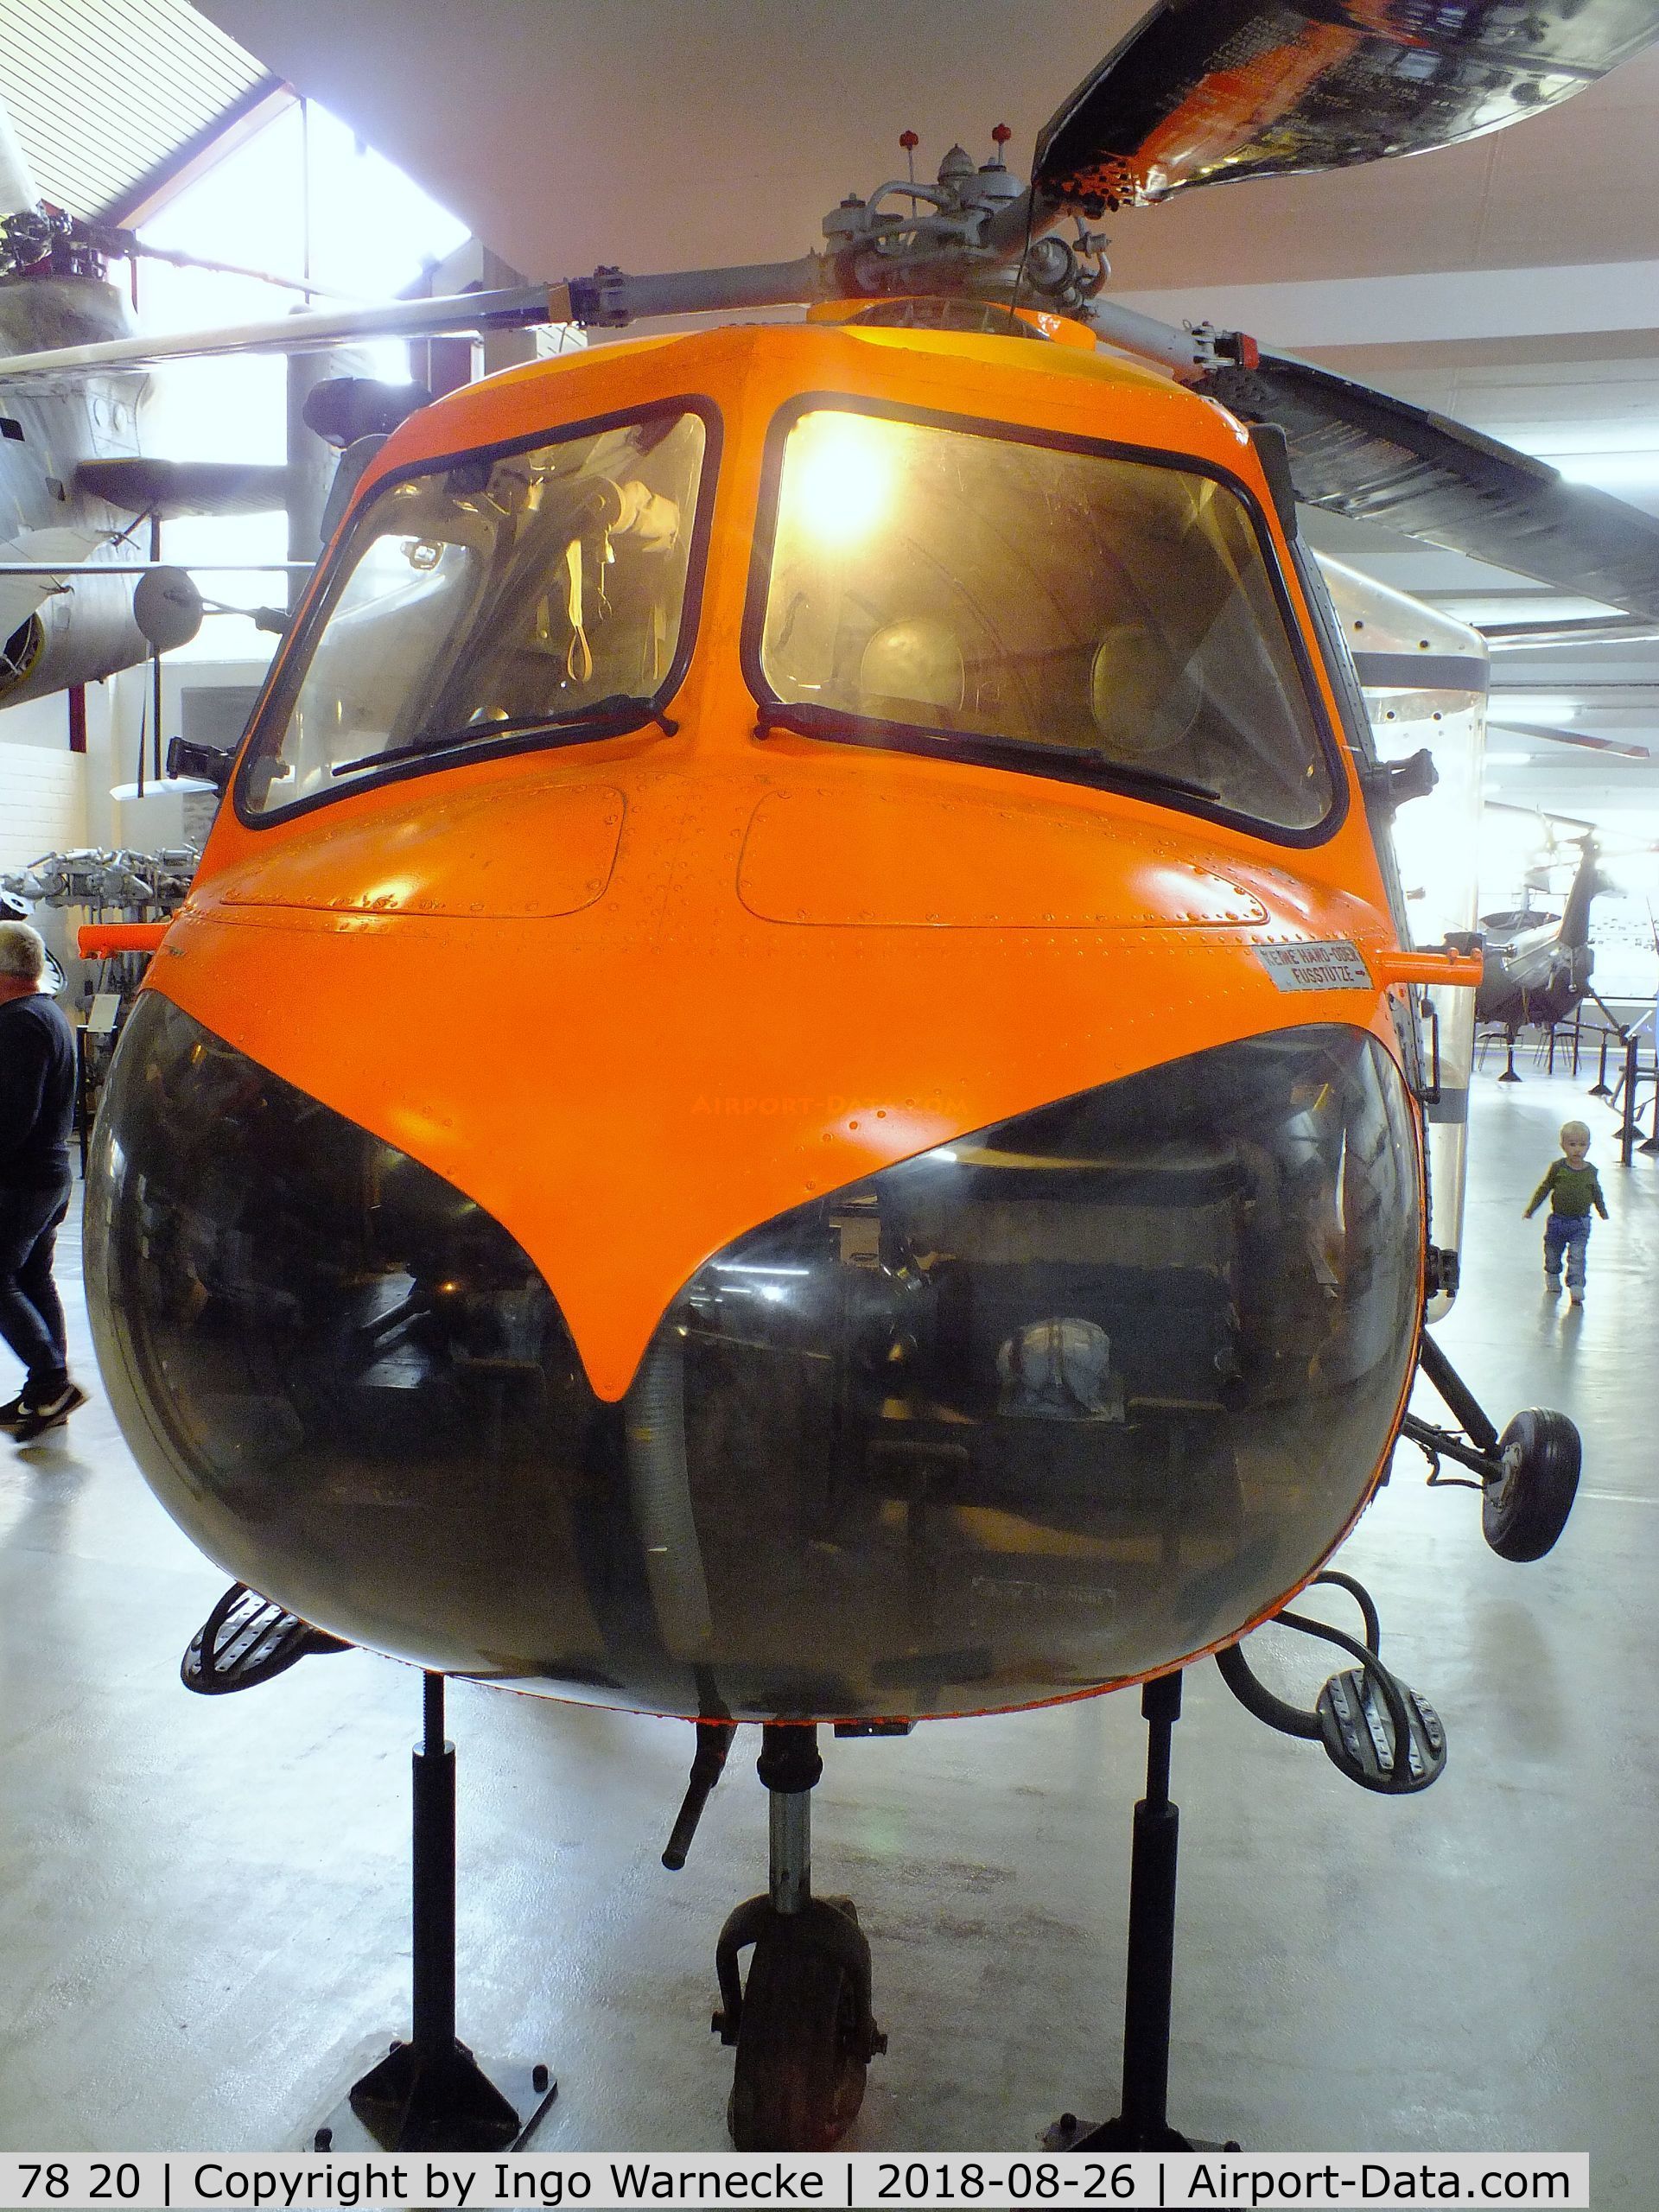 78 20, Bristol 171 Sycamore Mk.52 C/N 13478, Bristol 171 Sycamore Mk52 at the Hubschraubermuseum (helicopter museum), Bückeburg